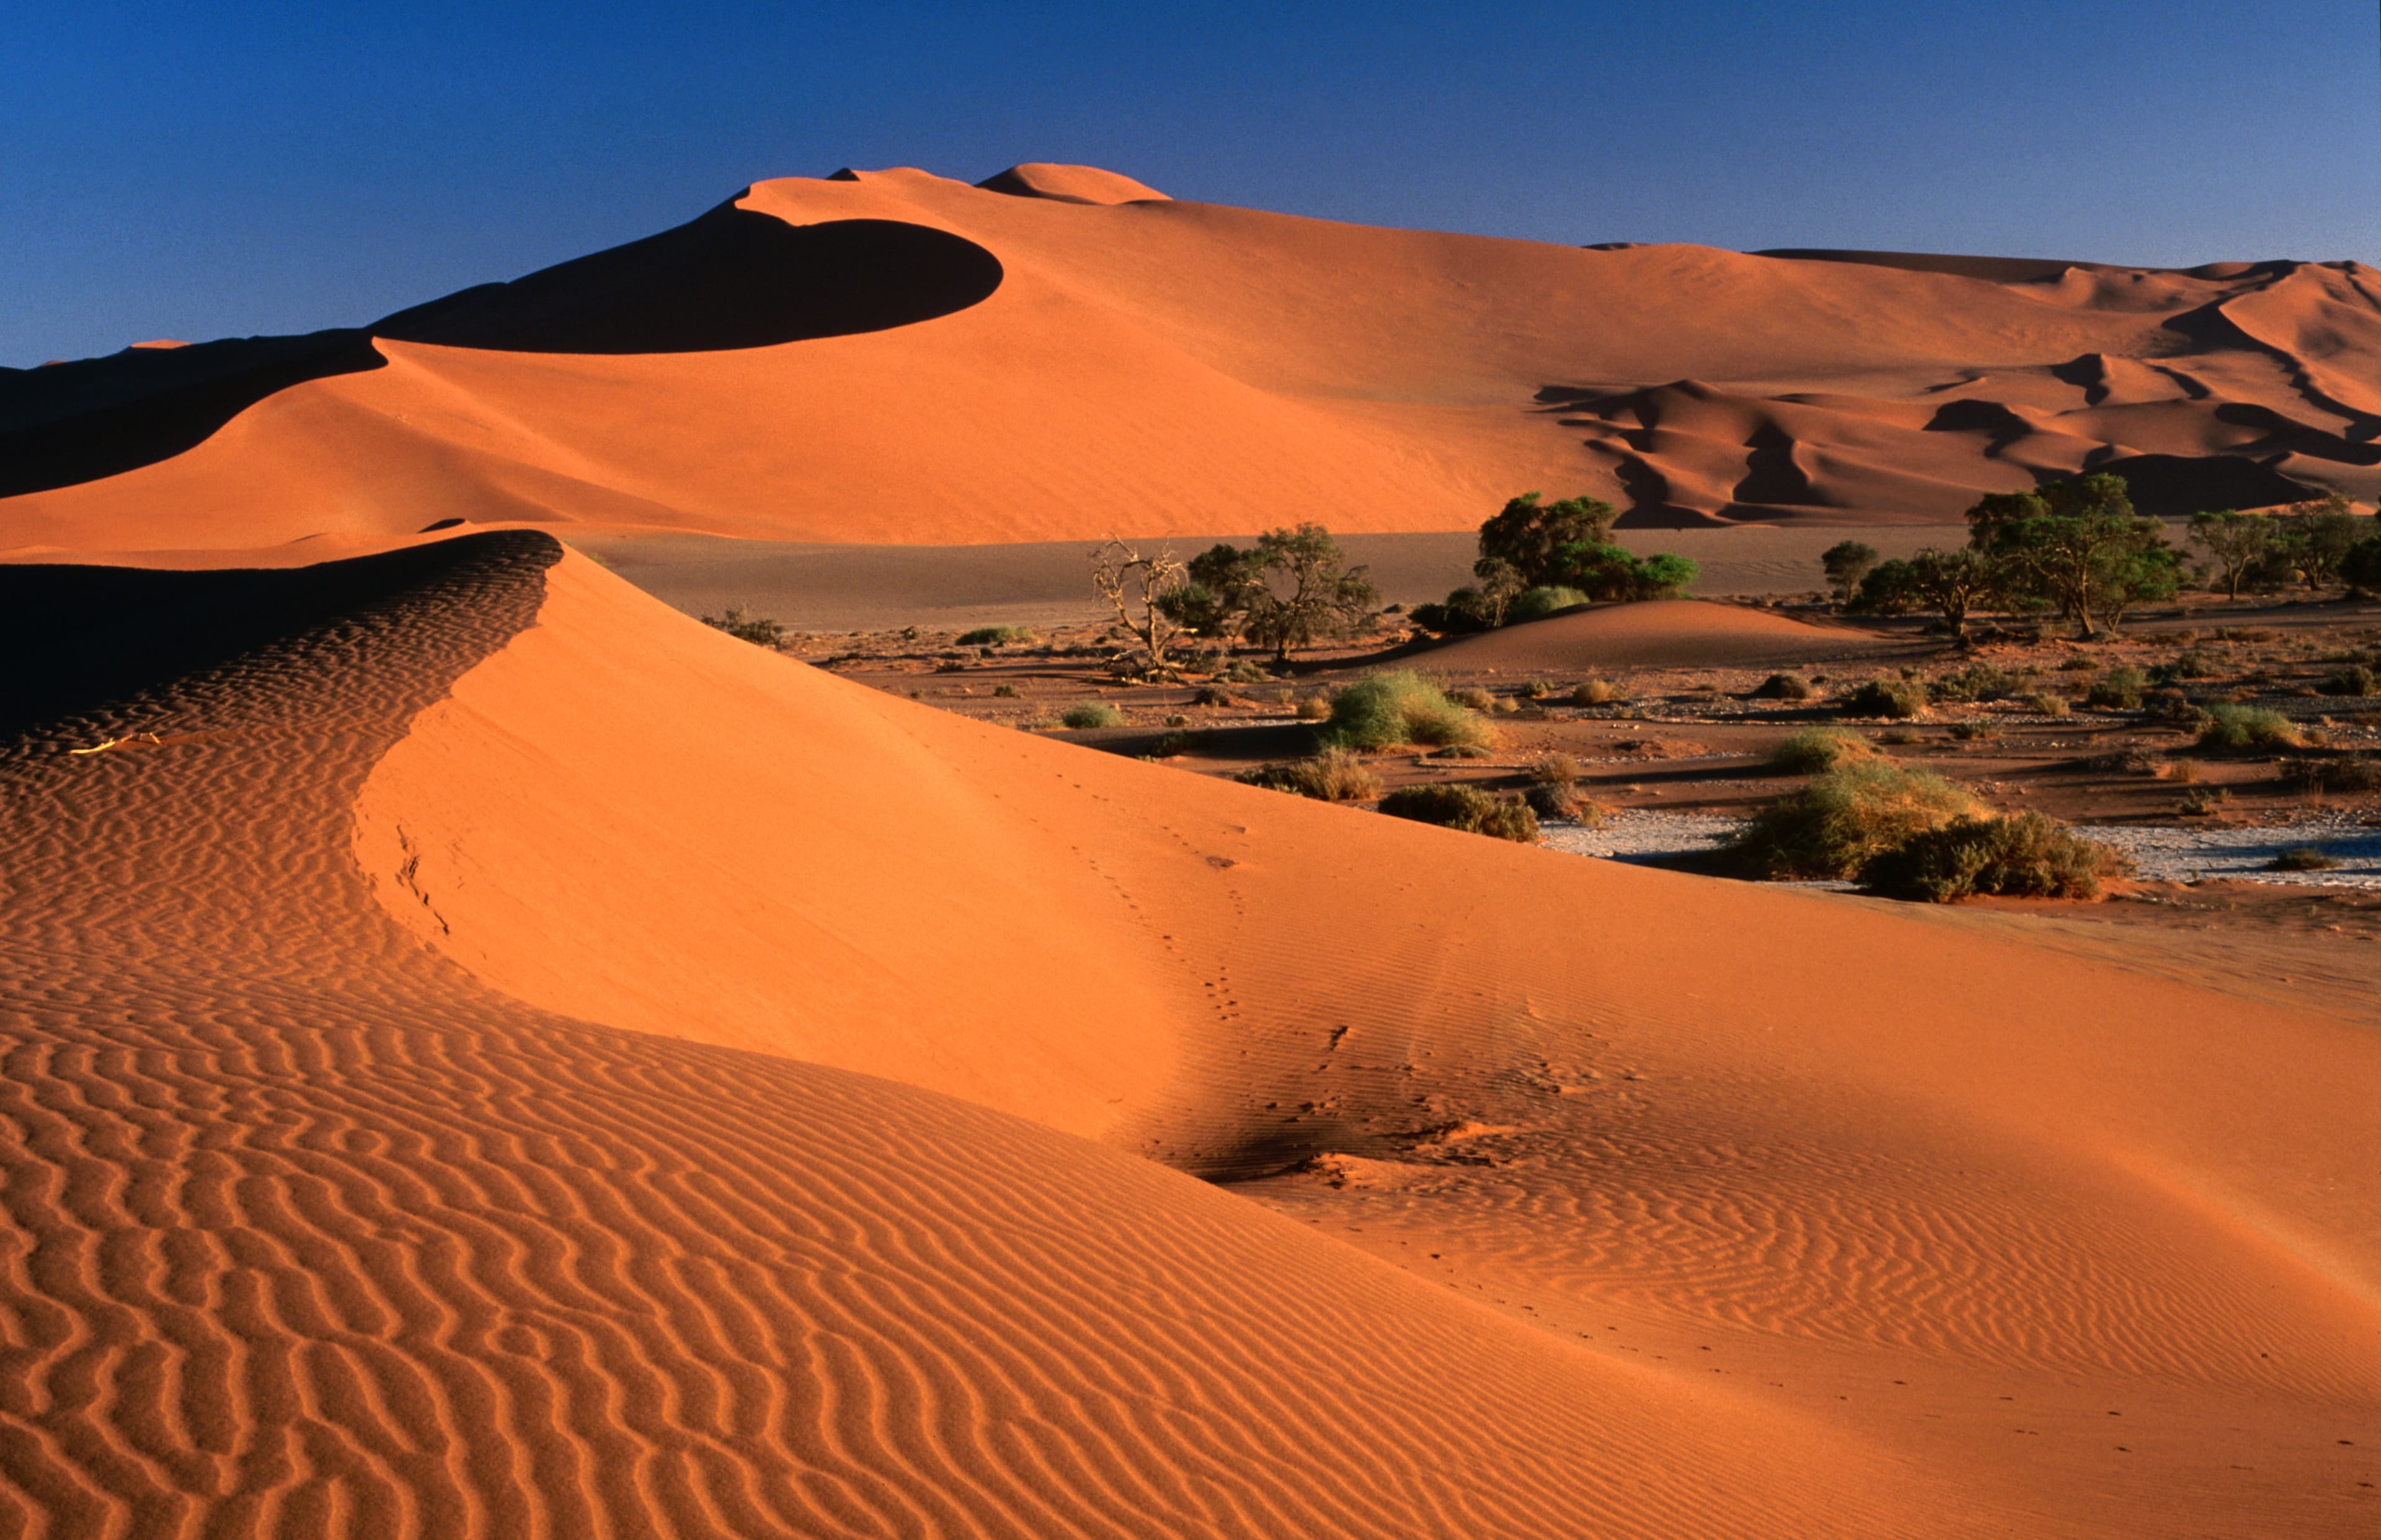 Namib sand dunes, Namibia Desert Park